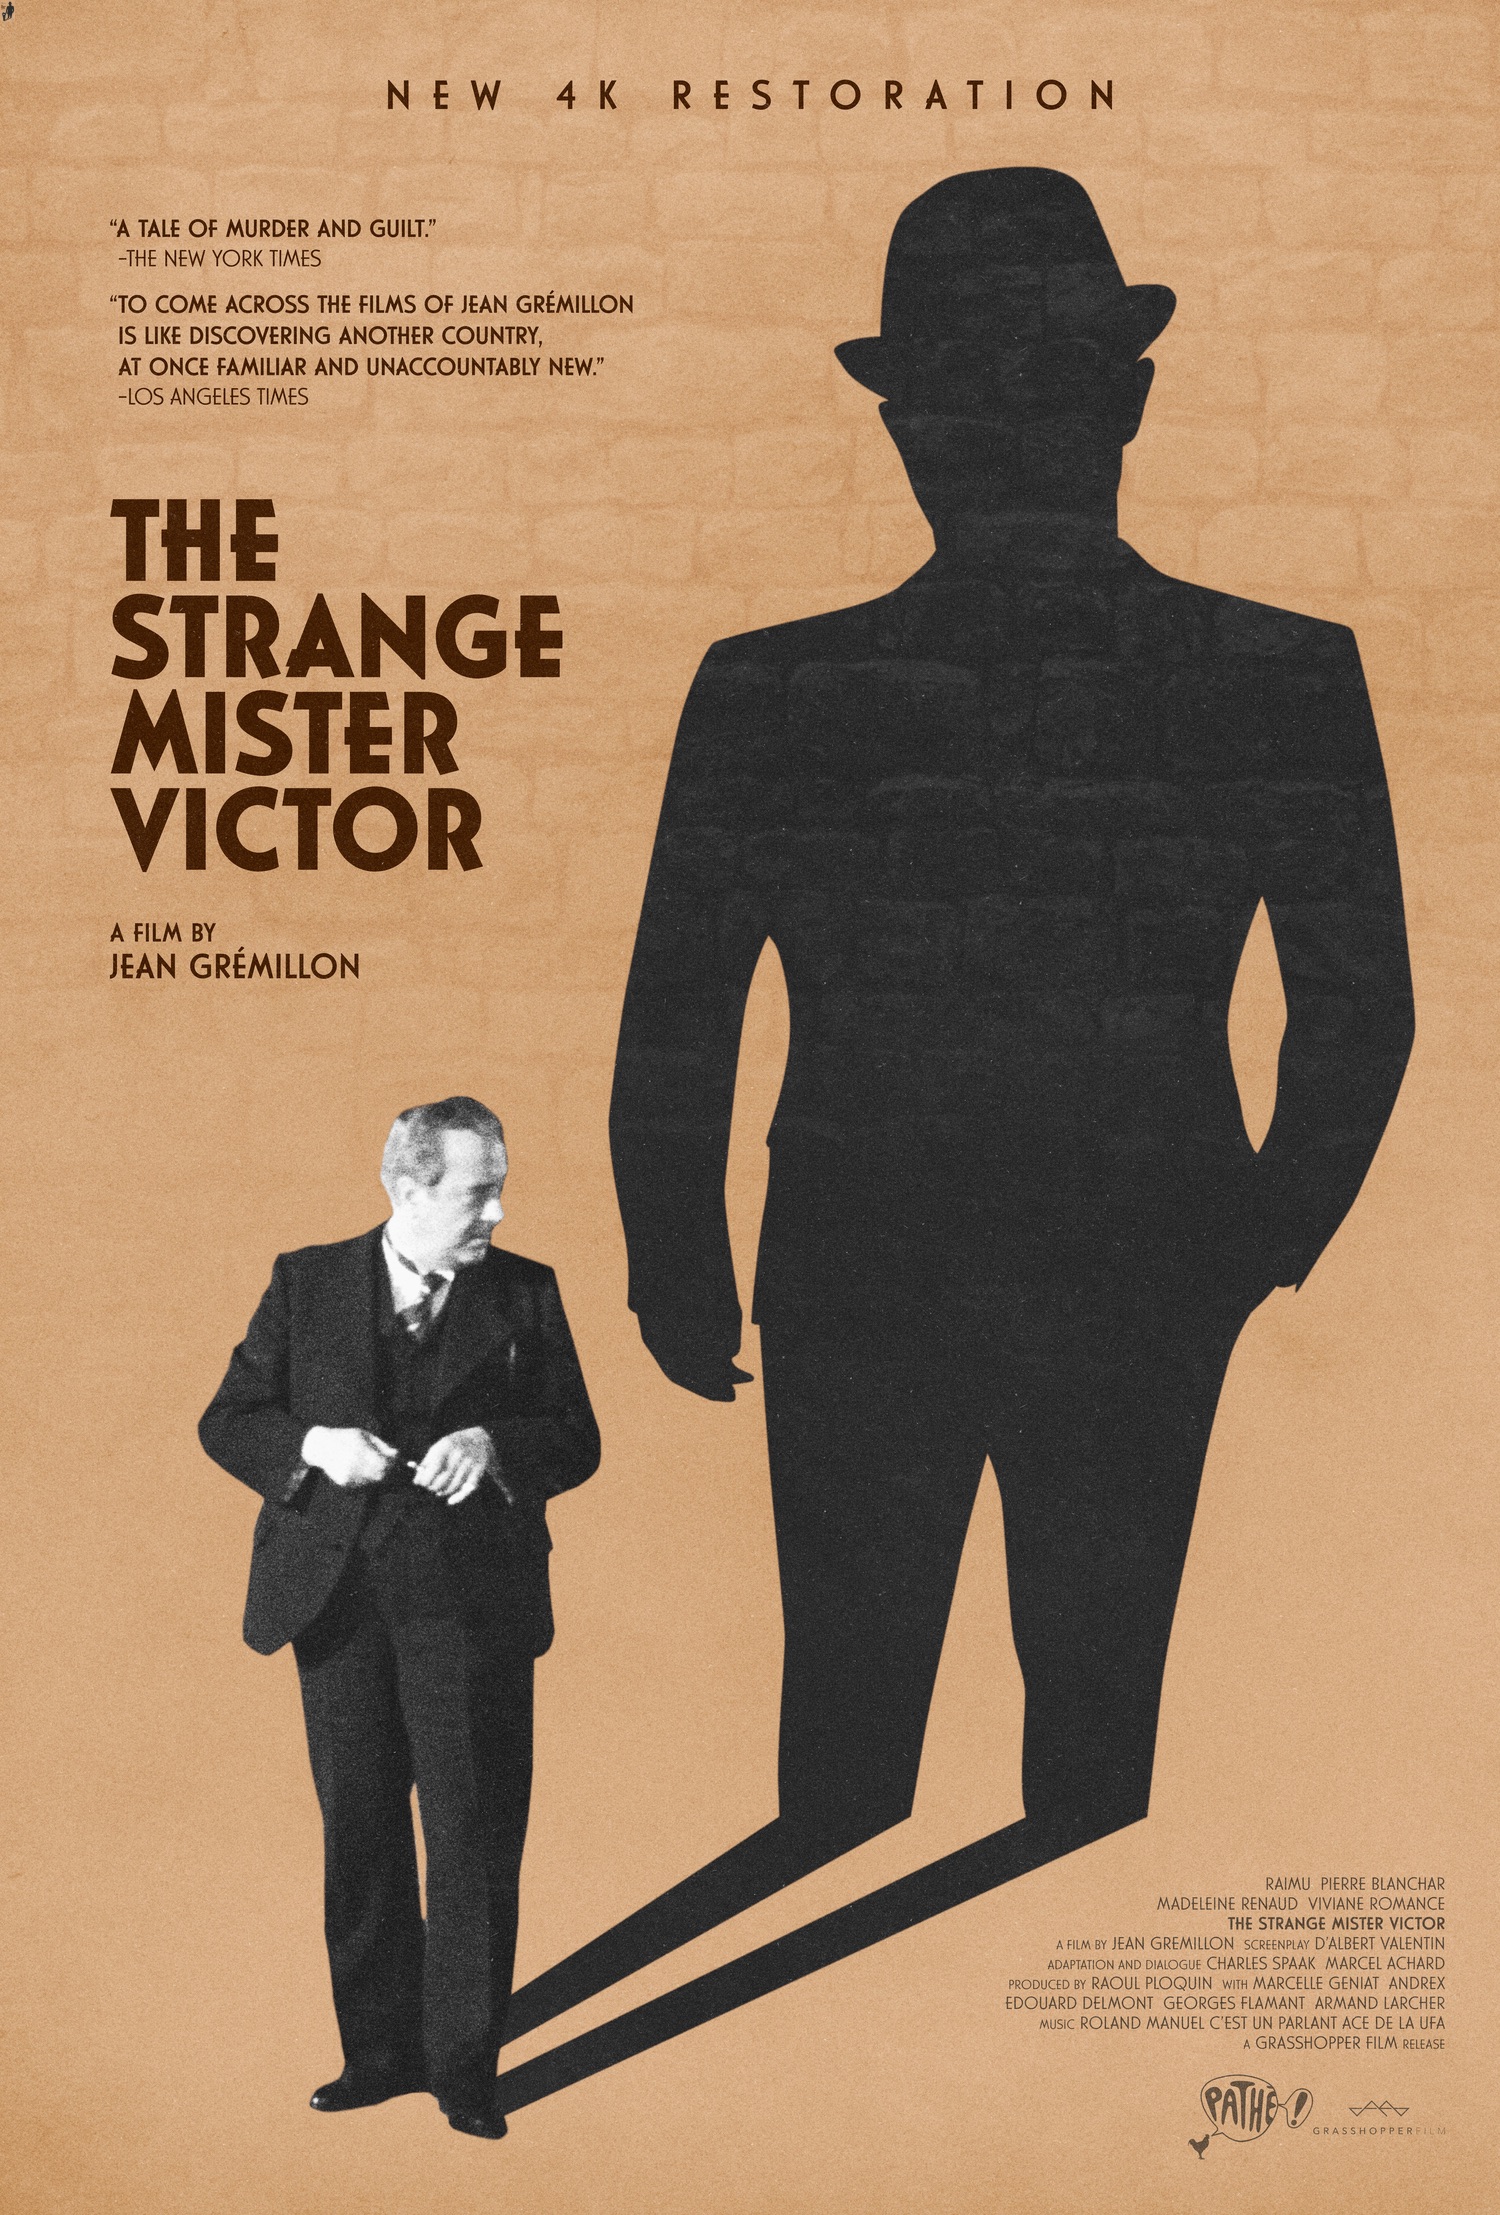 The Strange Mister Victor